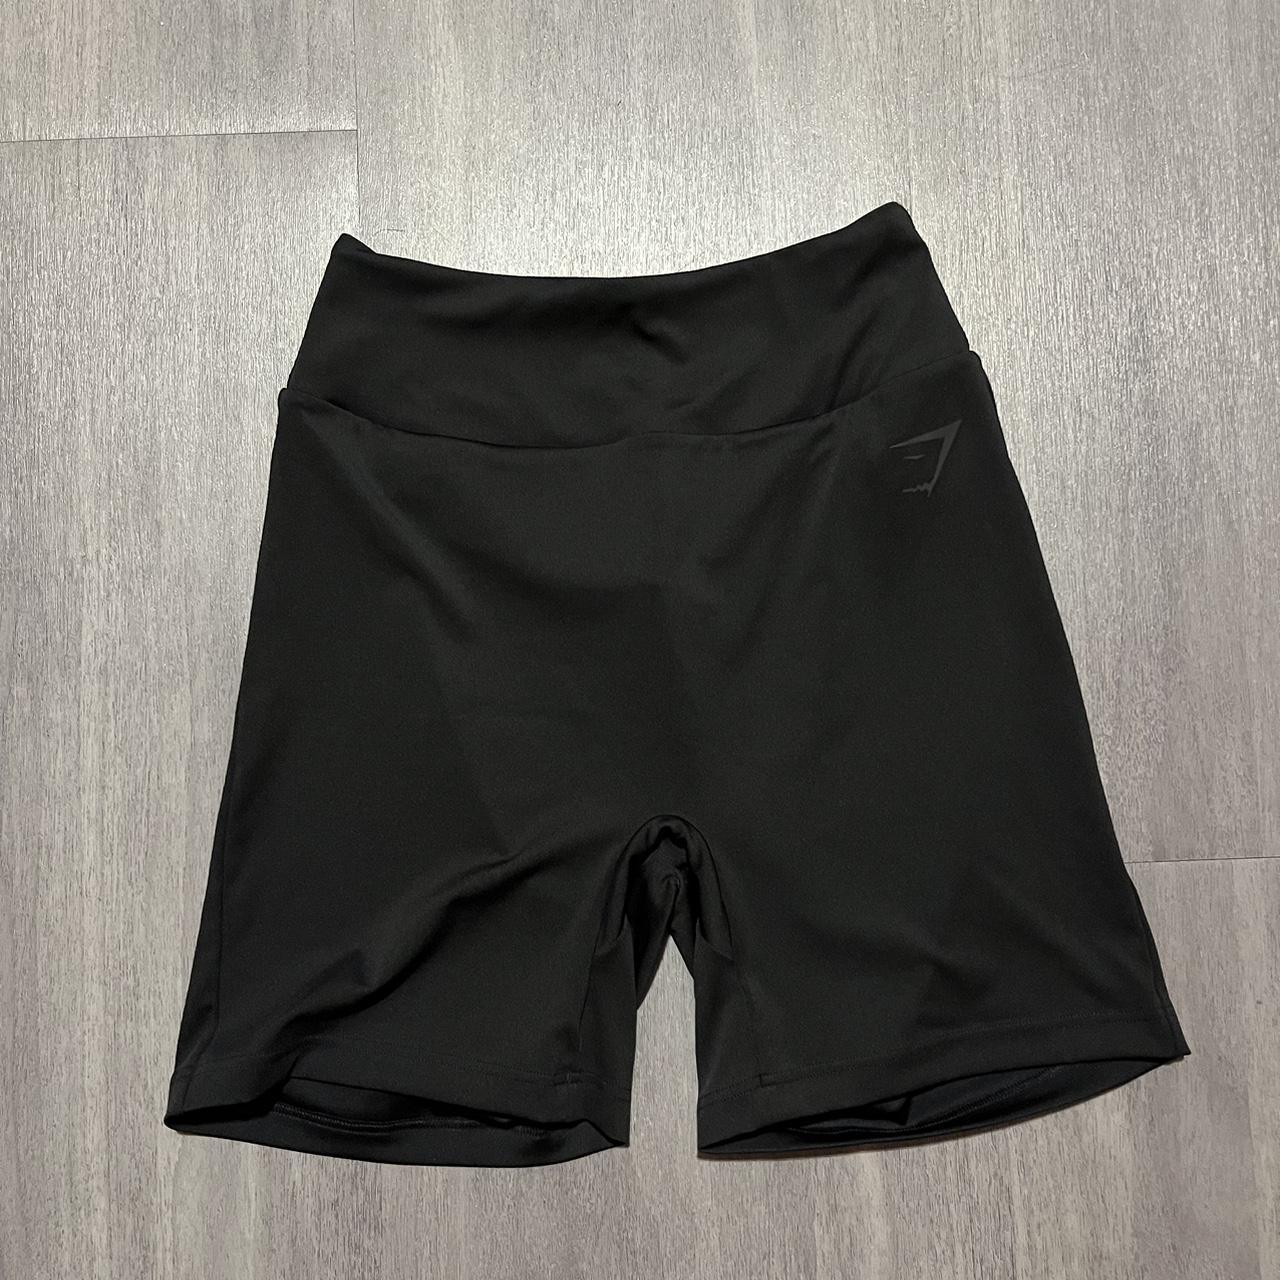 Black Gymshark shorts Never worn Size m - Depop